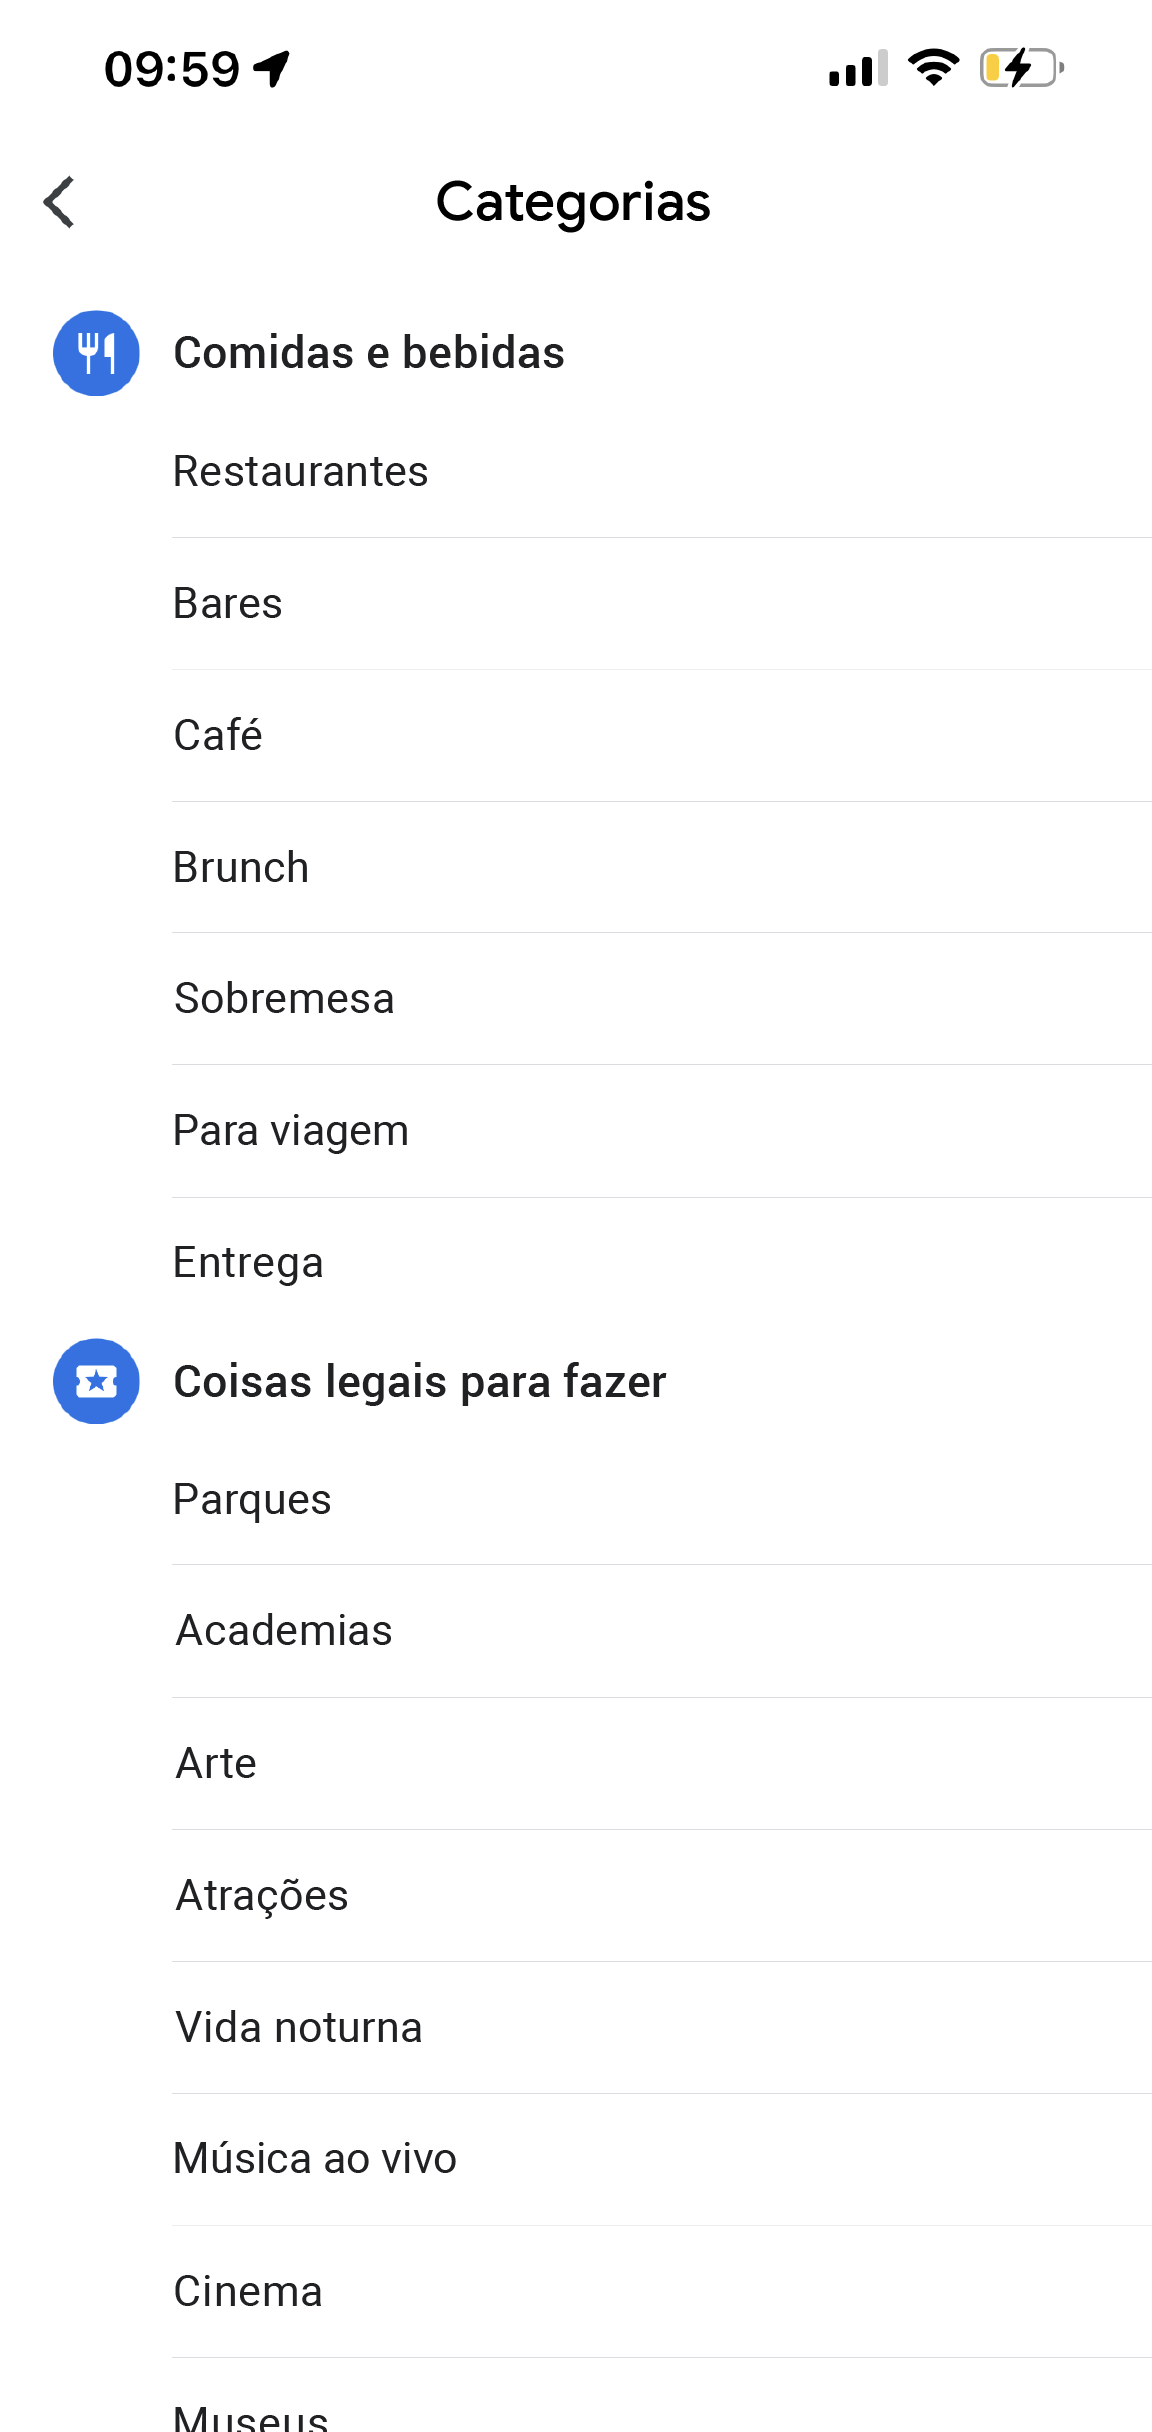 O app Google Maps tem uma página com título o "Mais categorias". Nela, você encontra opções como "Comidas e bebidas", "Coisas legais para fazer" e "Compras", além das subcategorias.